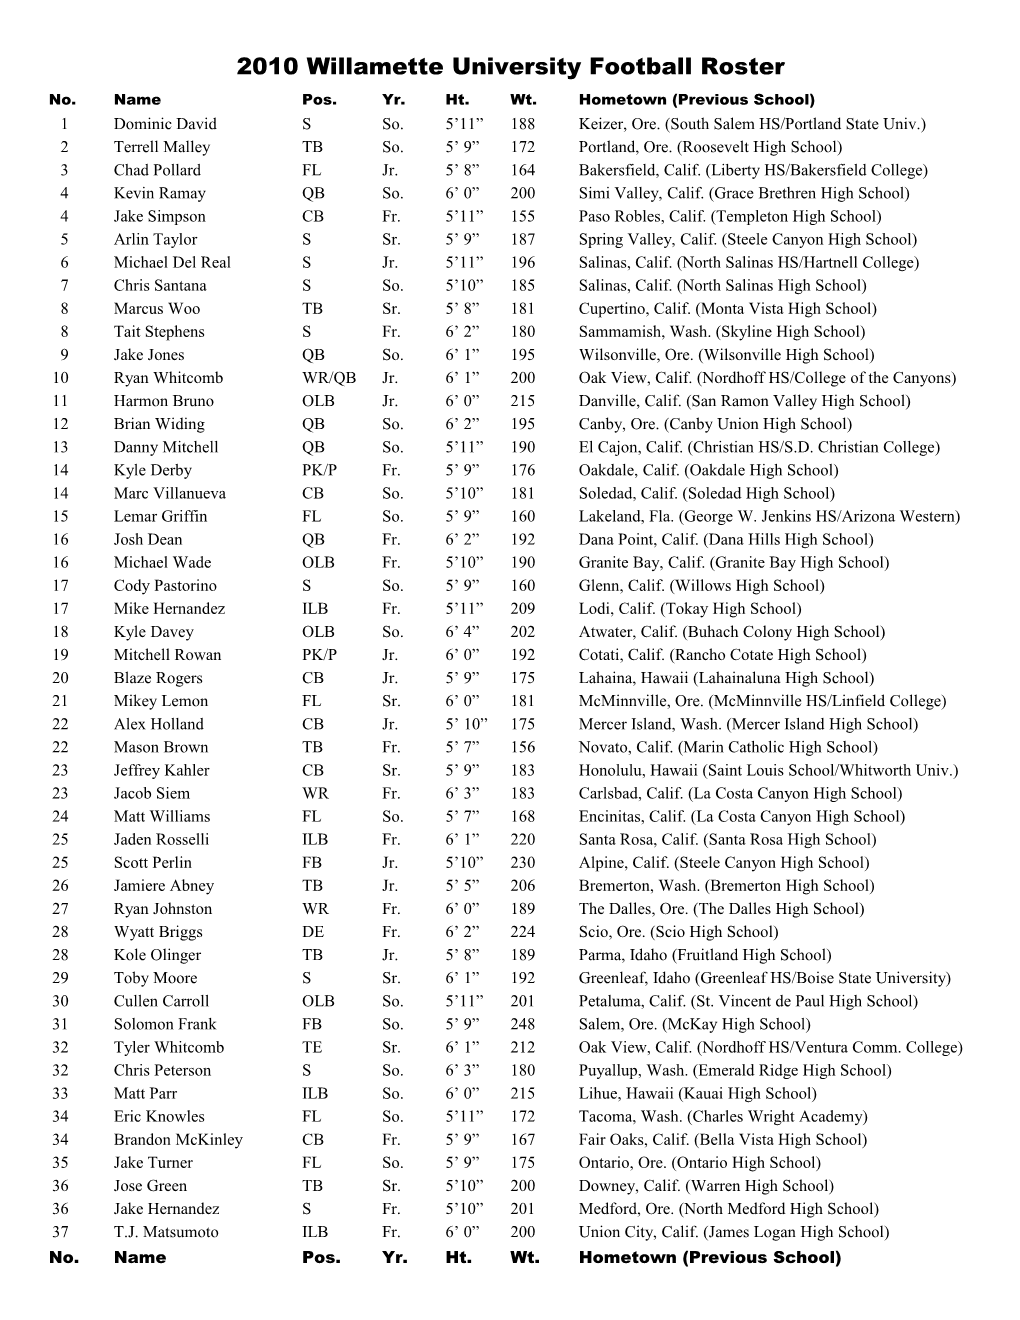 2009 Willamette University Football Roster